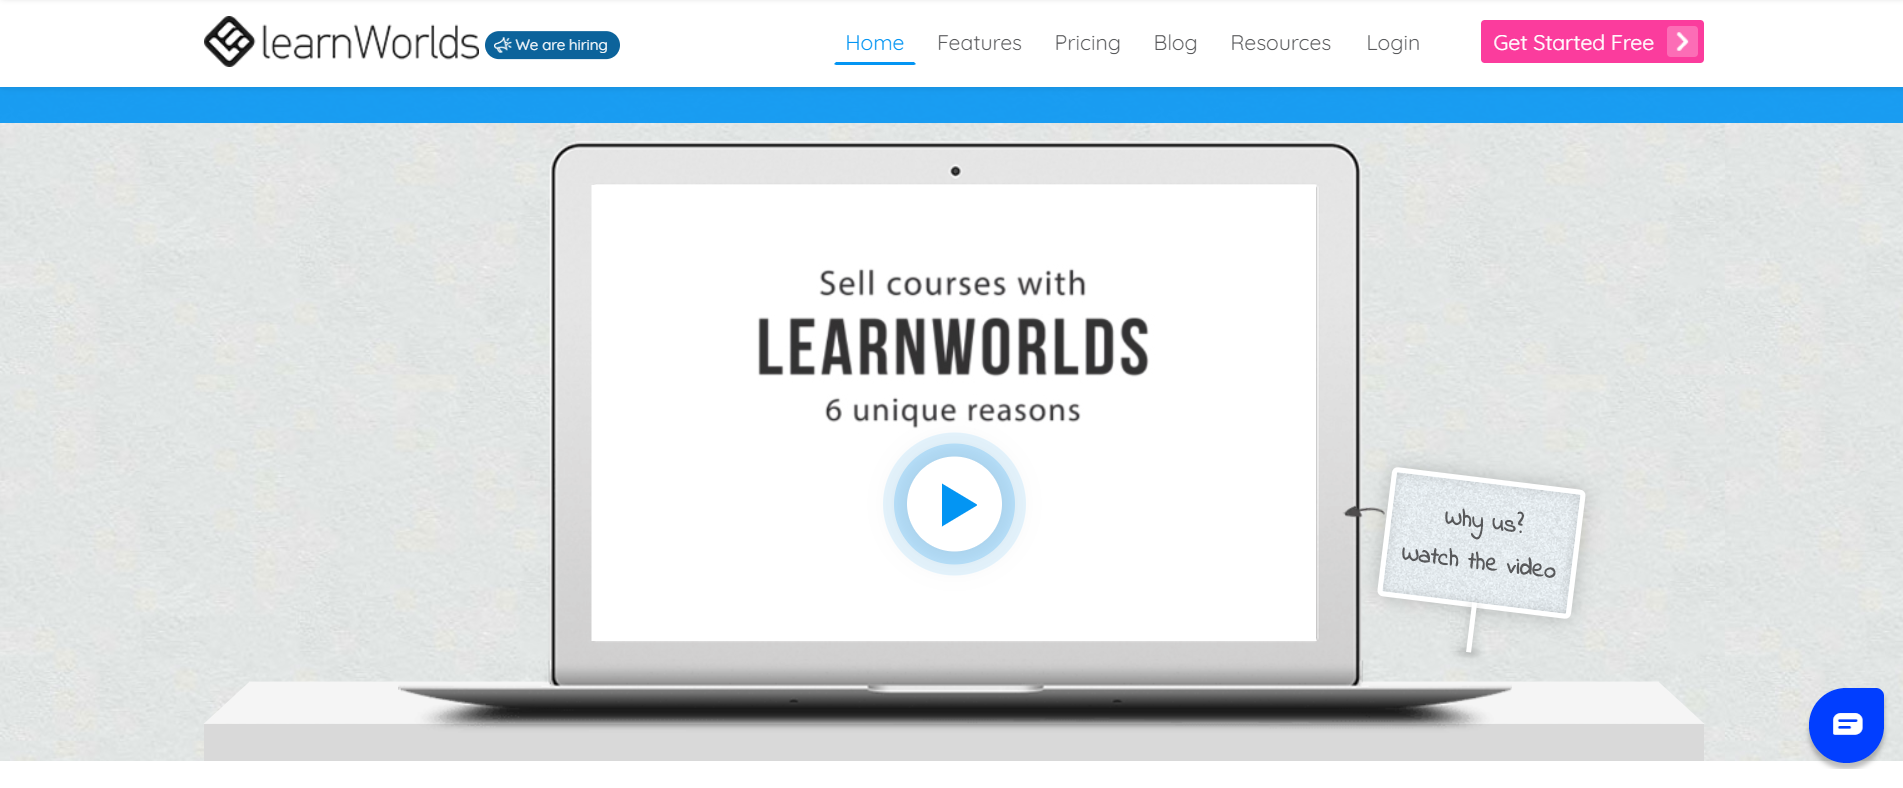 LearnWorld Overview: Podia Vs LearnWorlds